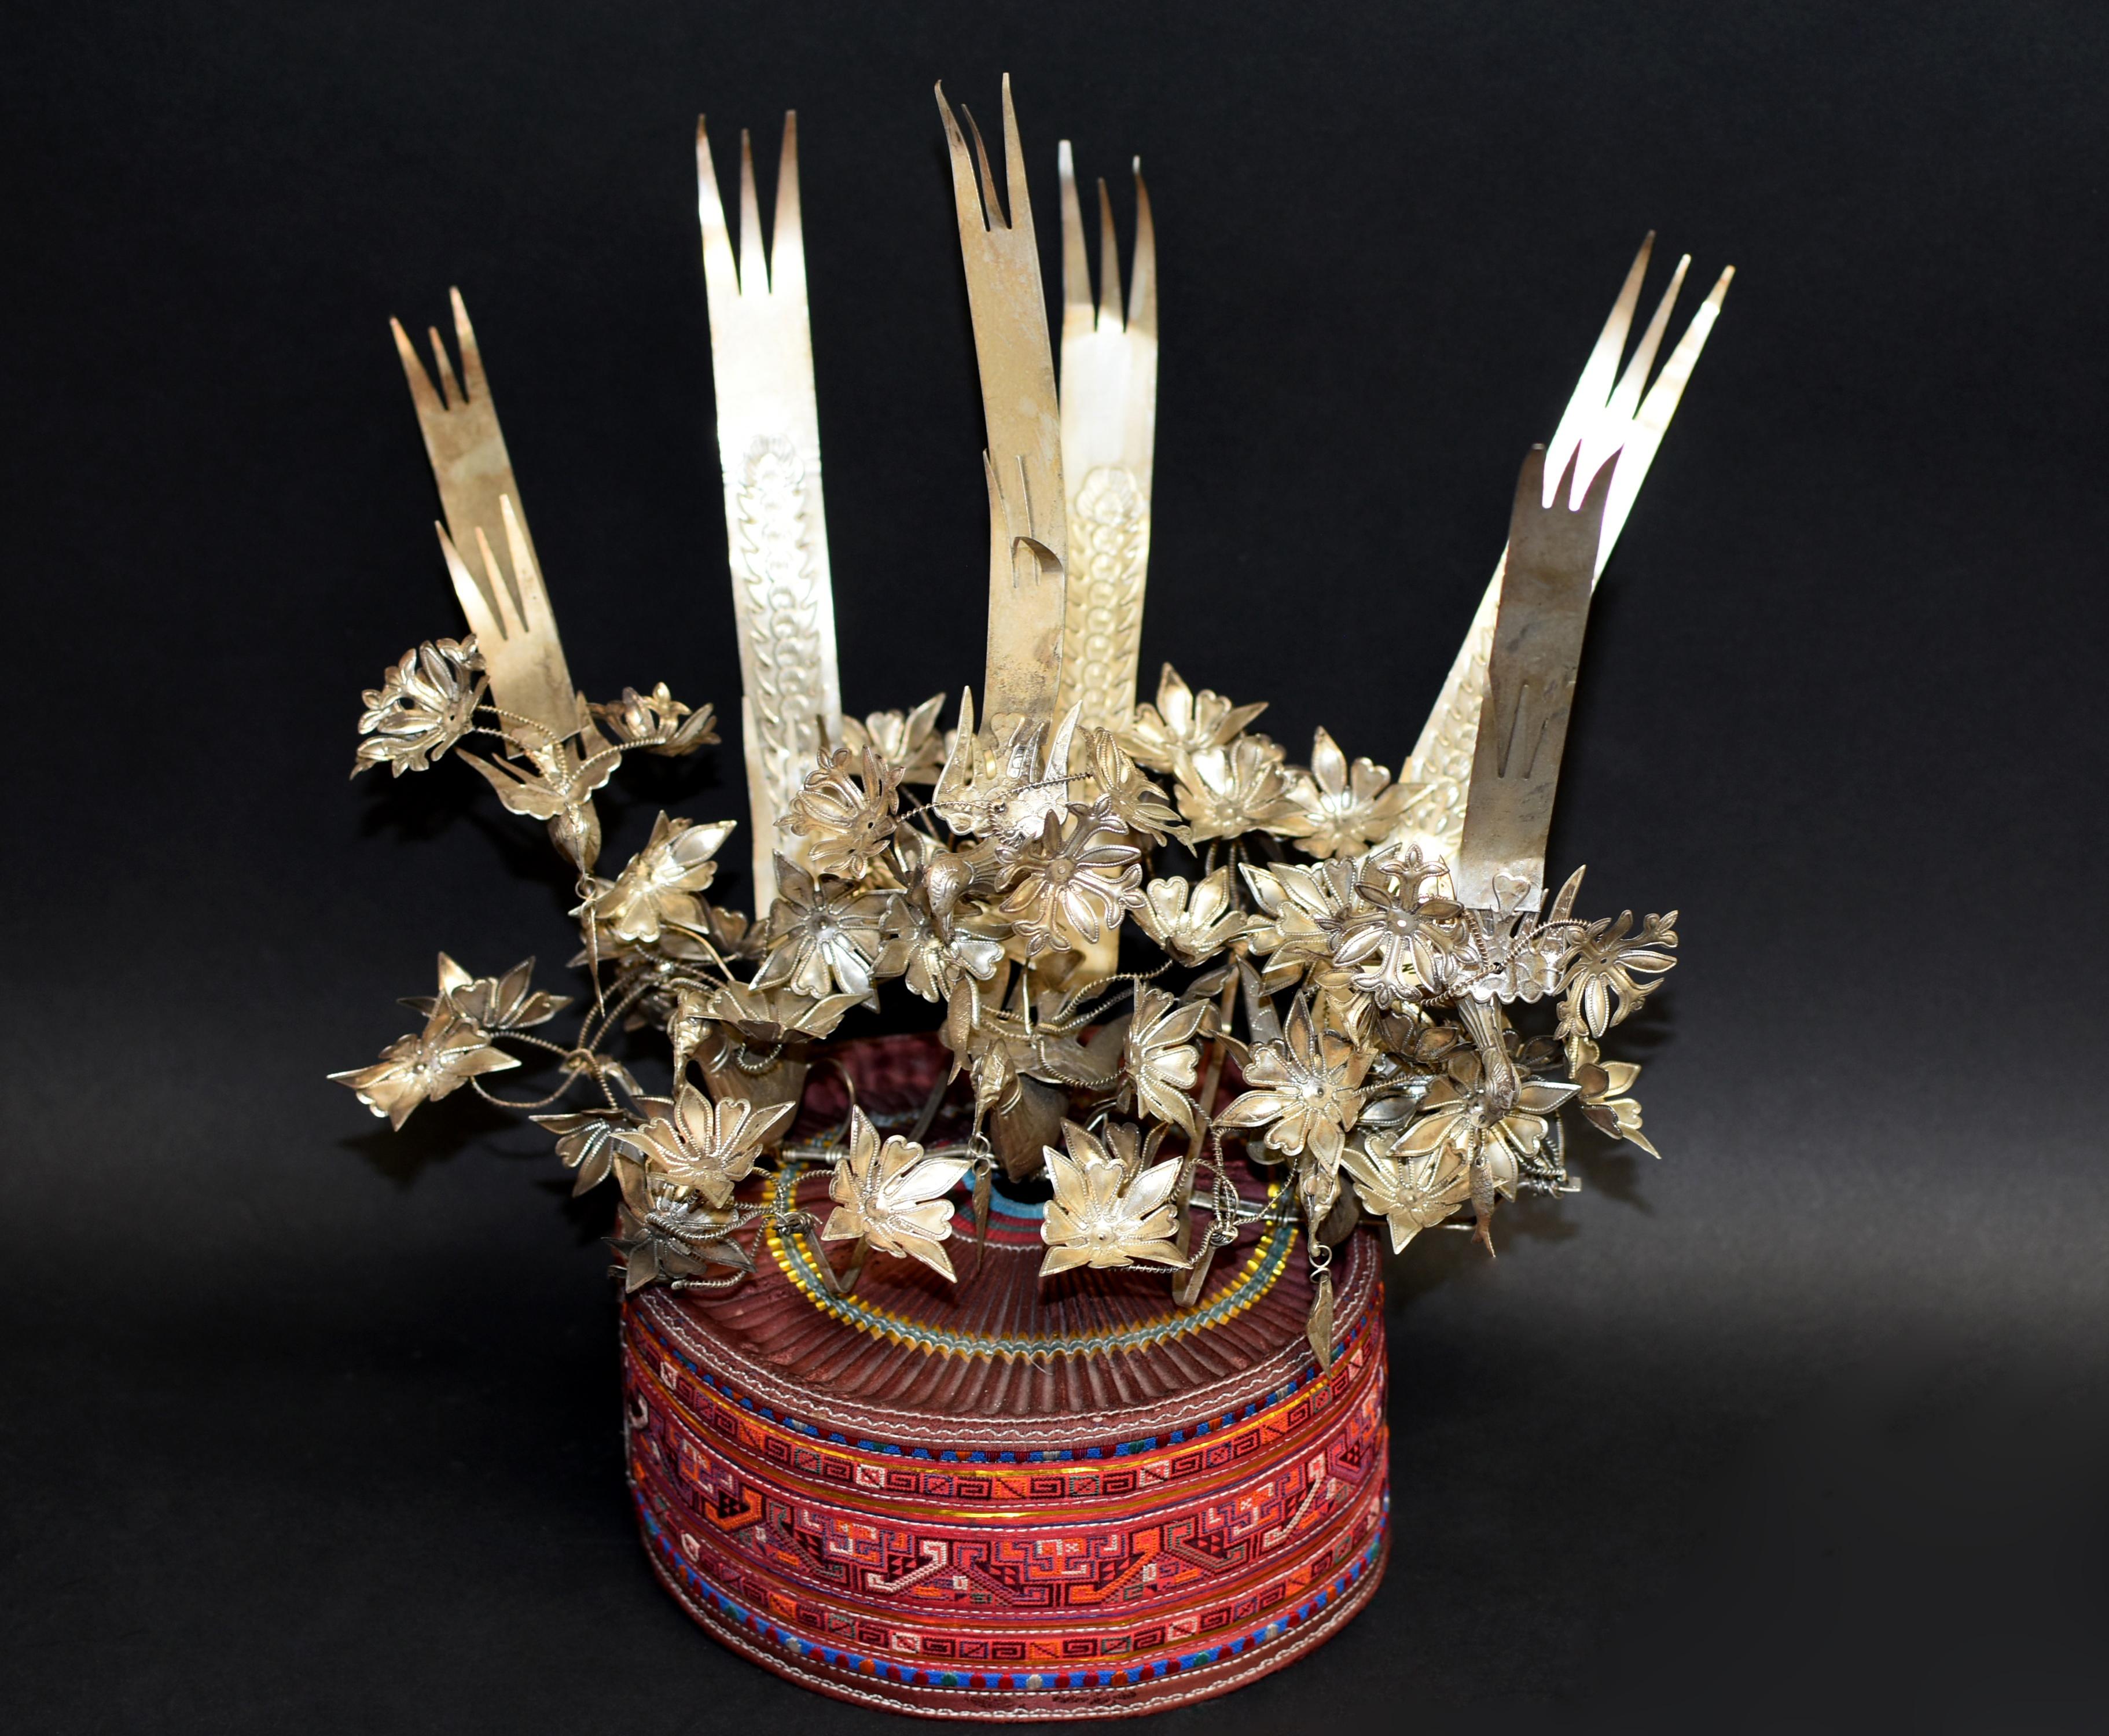 Un magnifique chapeau de la tribu Miao fait à la main avec des ornements en métal argenté. Le chapeau fabriqué à la main est recouvert de bandes brodées. La couronne proéminente est décorée de six phénix faits à la main, dont trois tiennent des